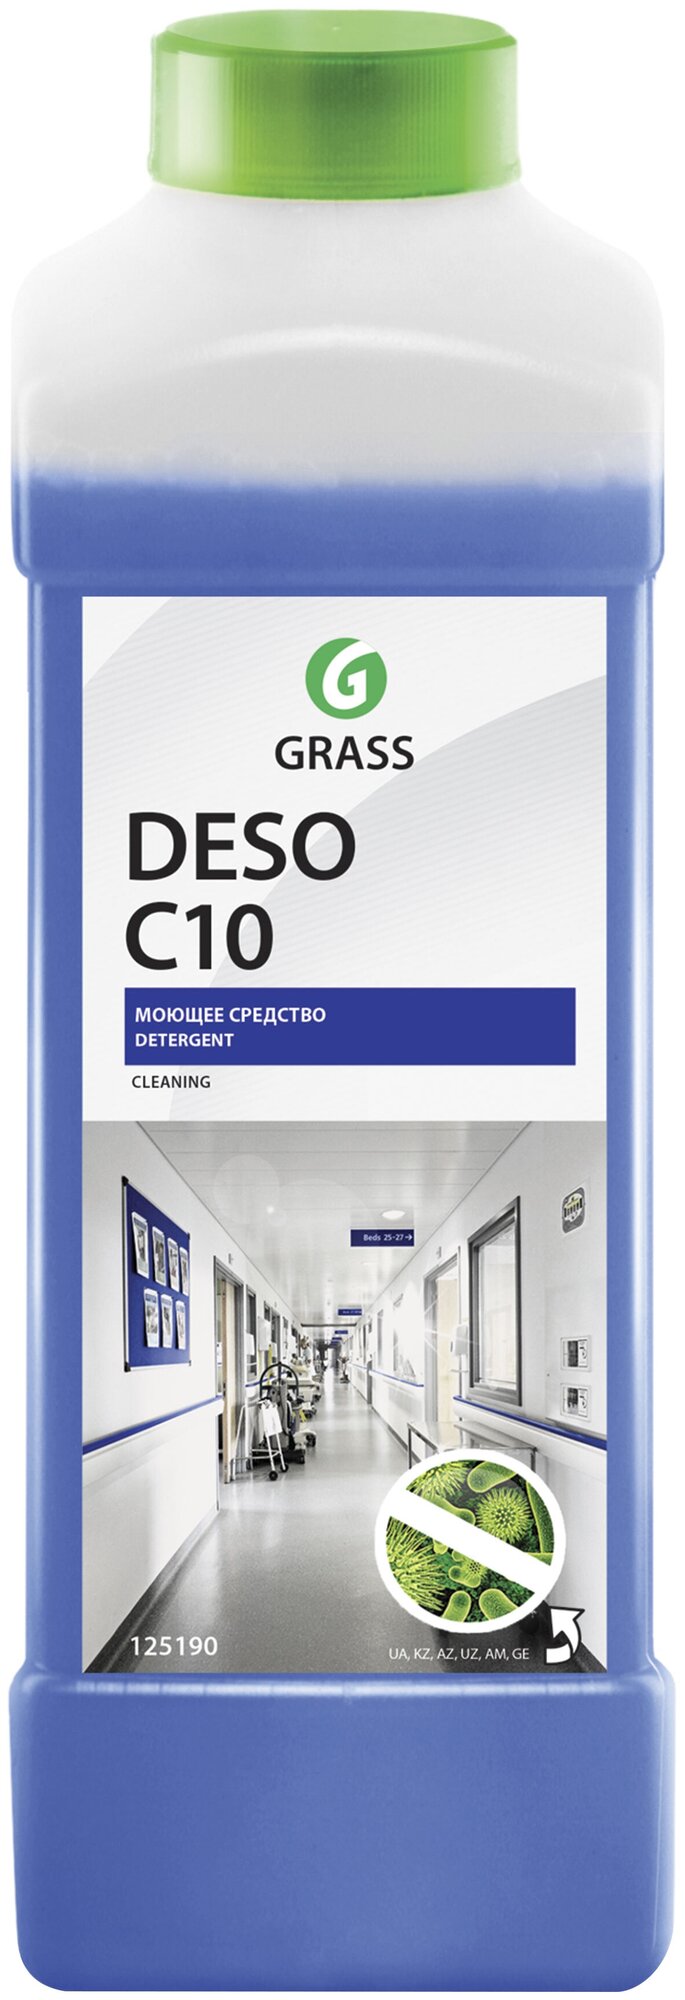 Средство для чистки и дезинфекции Grass DESO C10, 1 л